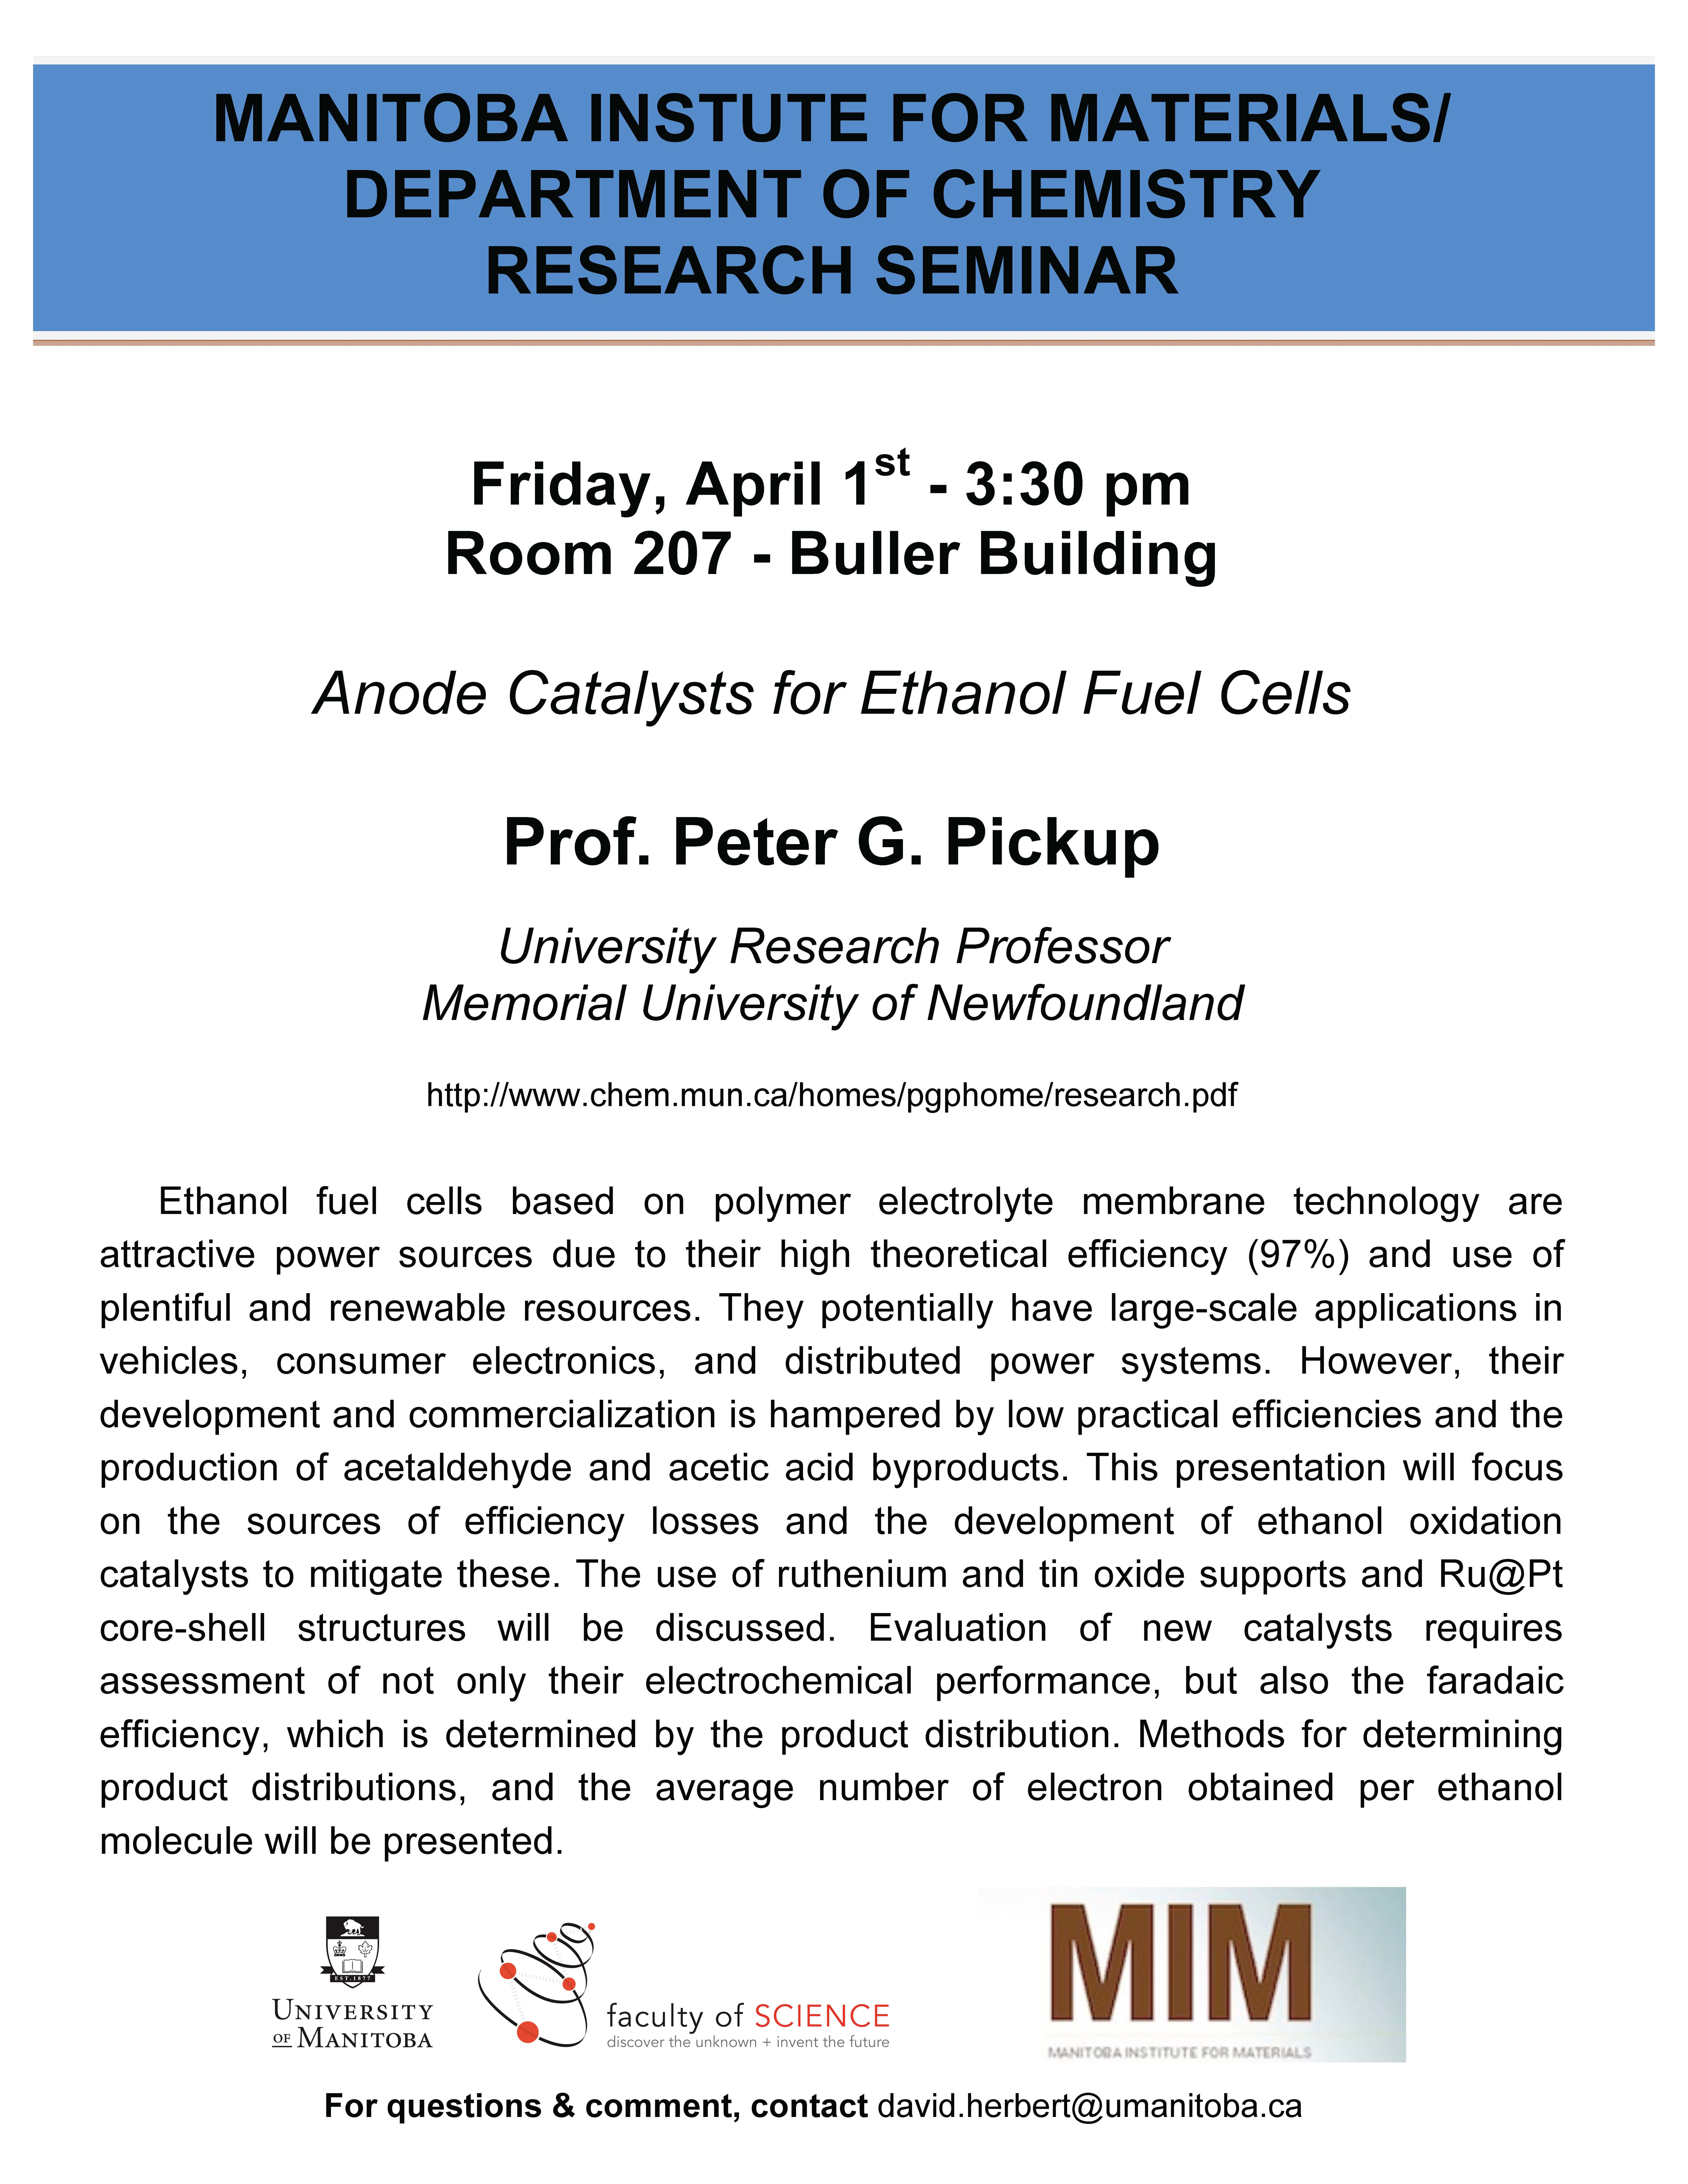 Peter Pickup Research Seminar Poster